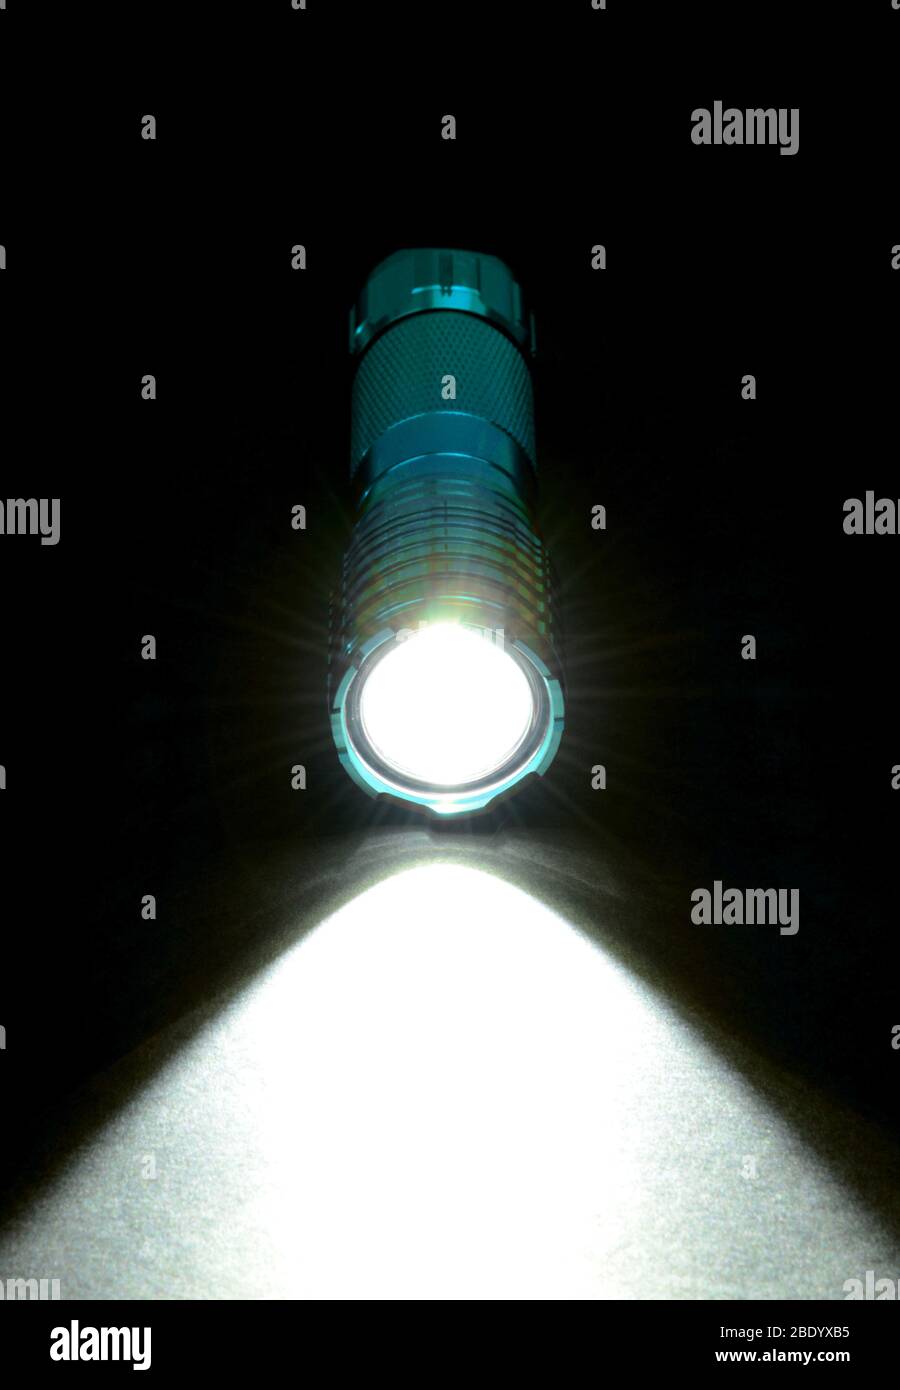 LED Flashlight Stock Photo